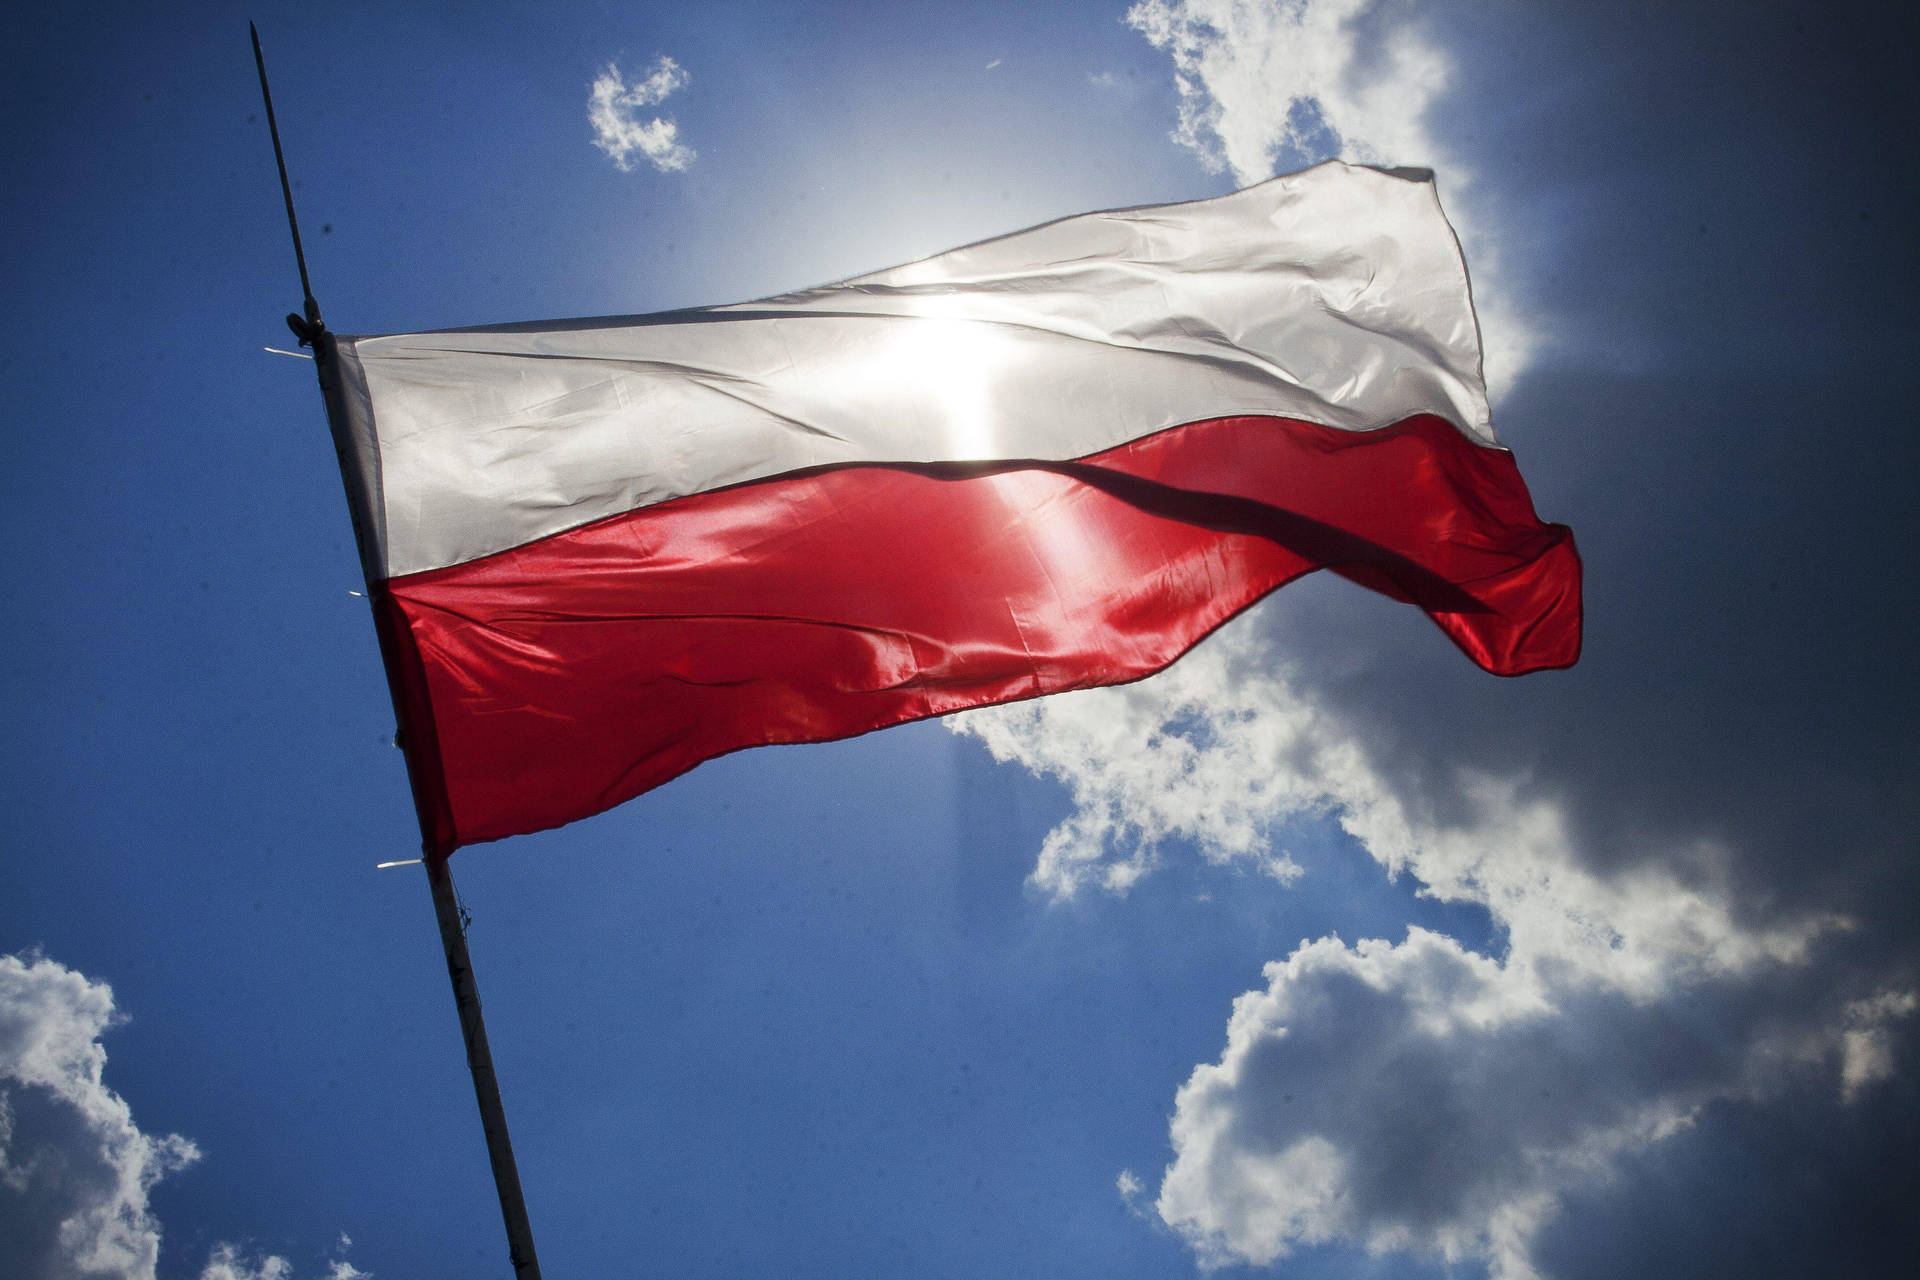 Polnischerflagge Bei Tageslicht Wallpaper